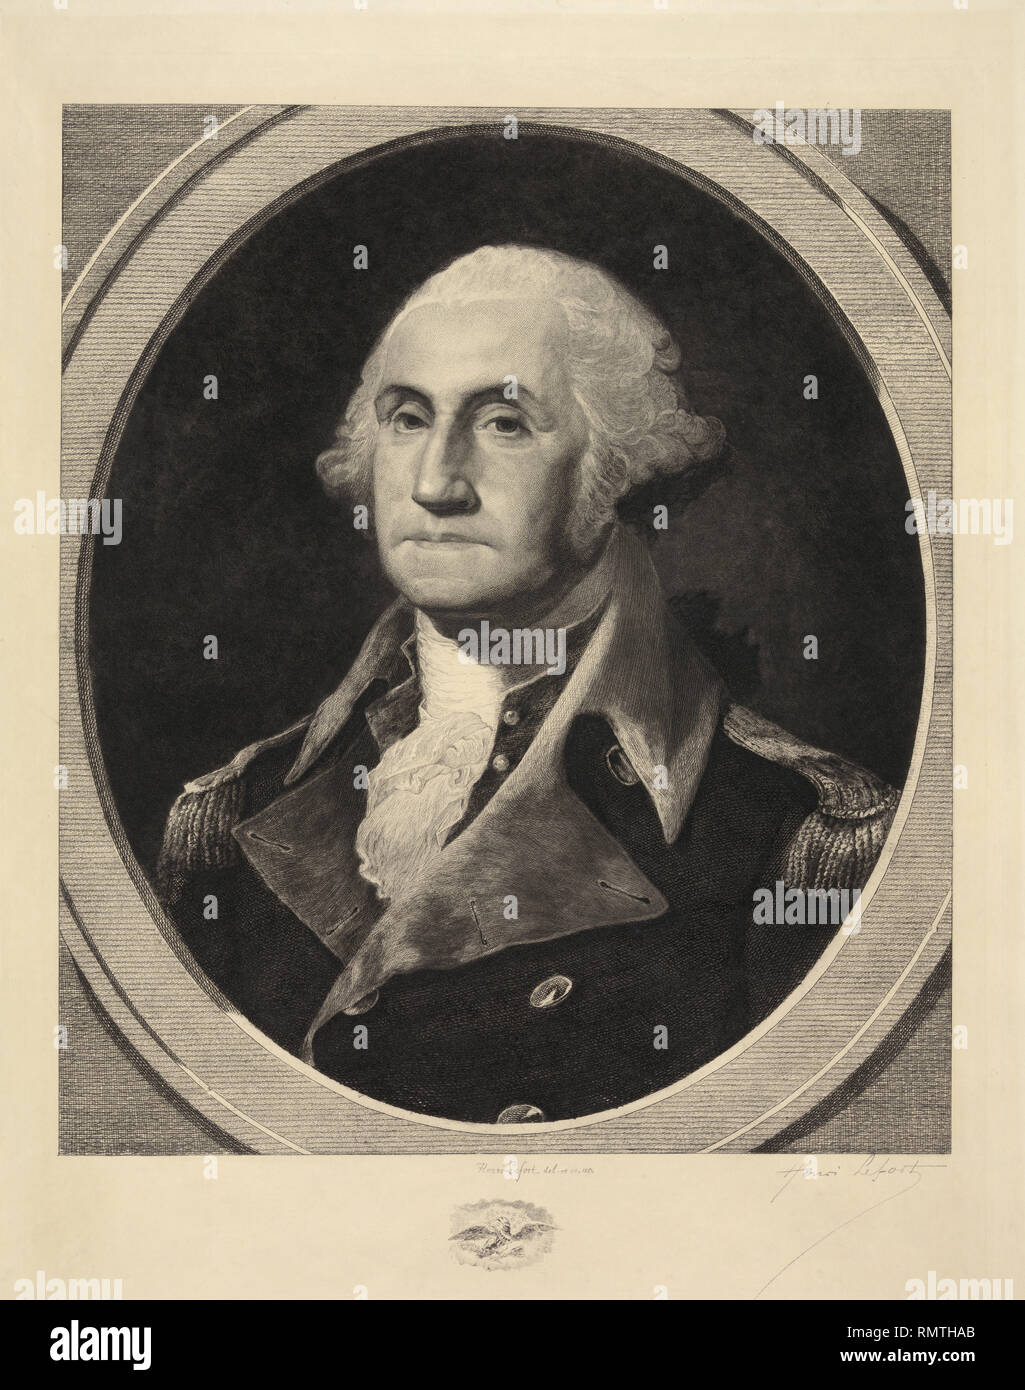 George Washington (1732-99), premier président des États-Unis, la tête et épaules Portrait, gravure par Henri Lefort, 1881 Banque D'Images